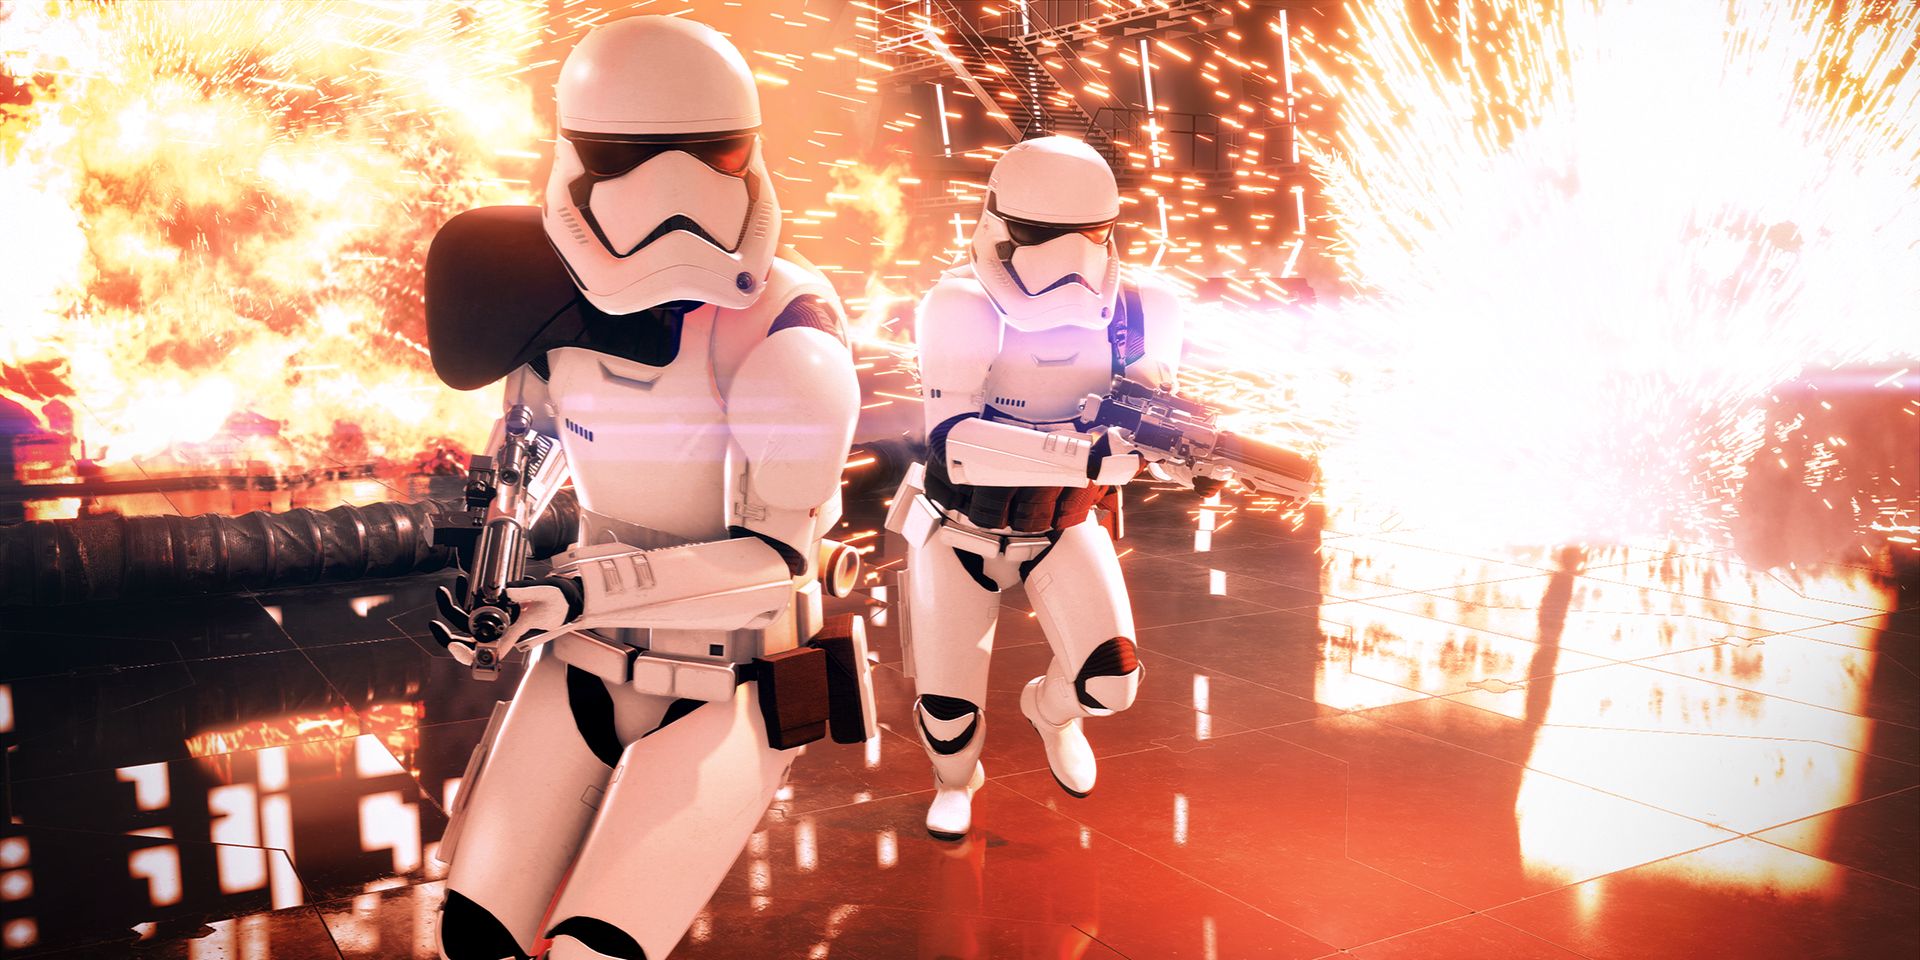 battlefront 2 first order troopers sparks